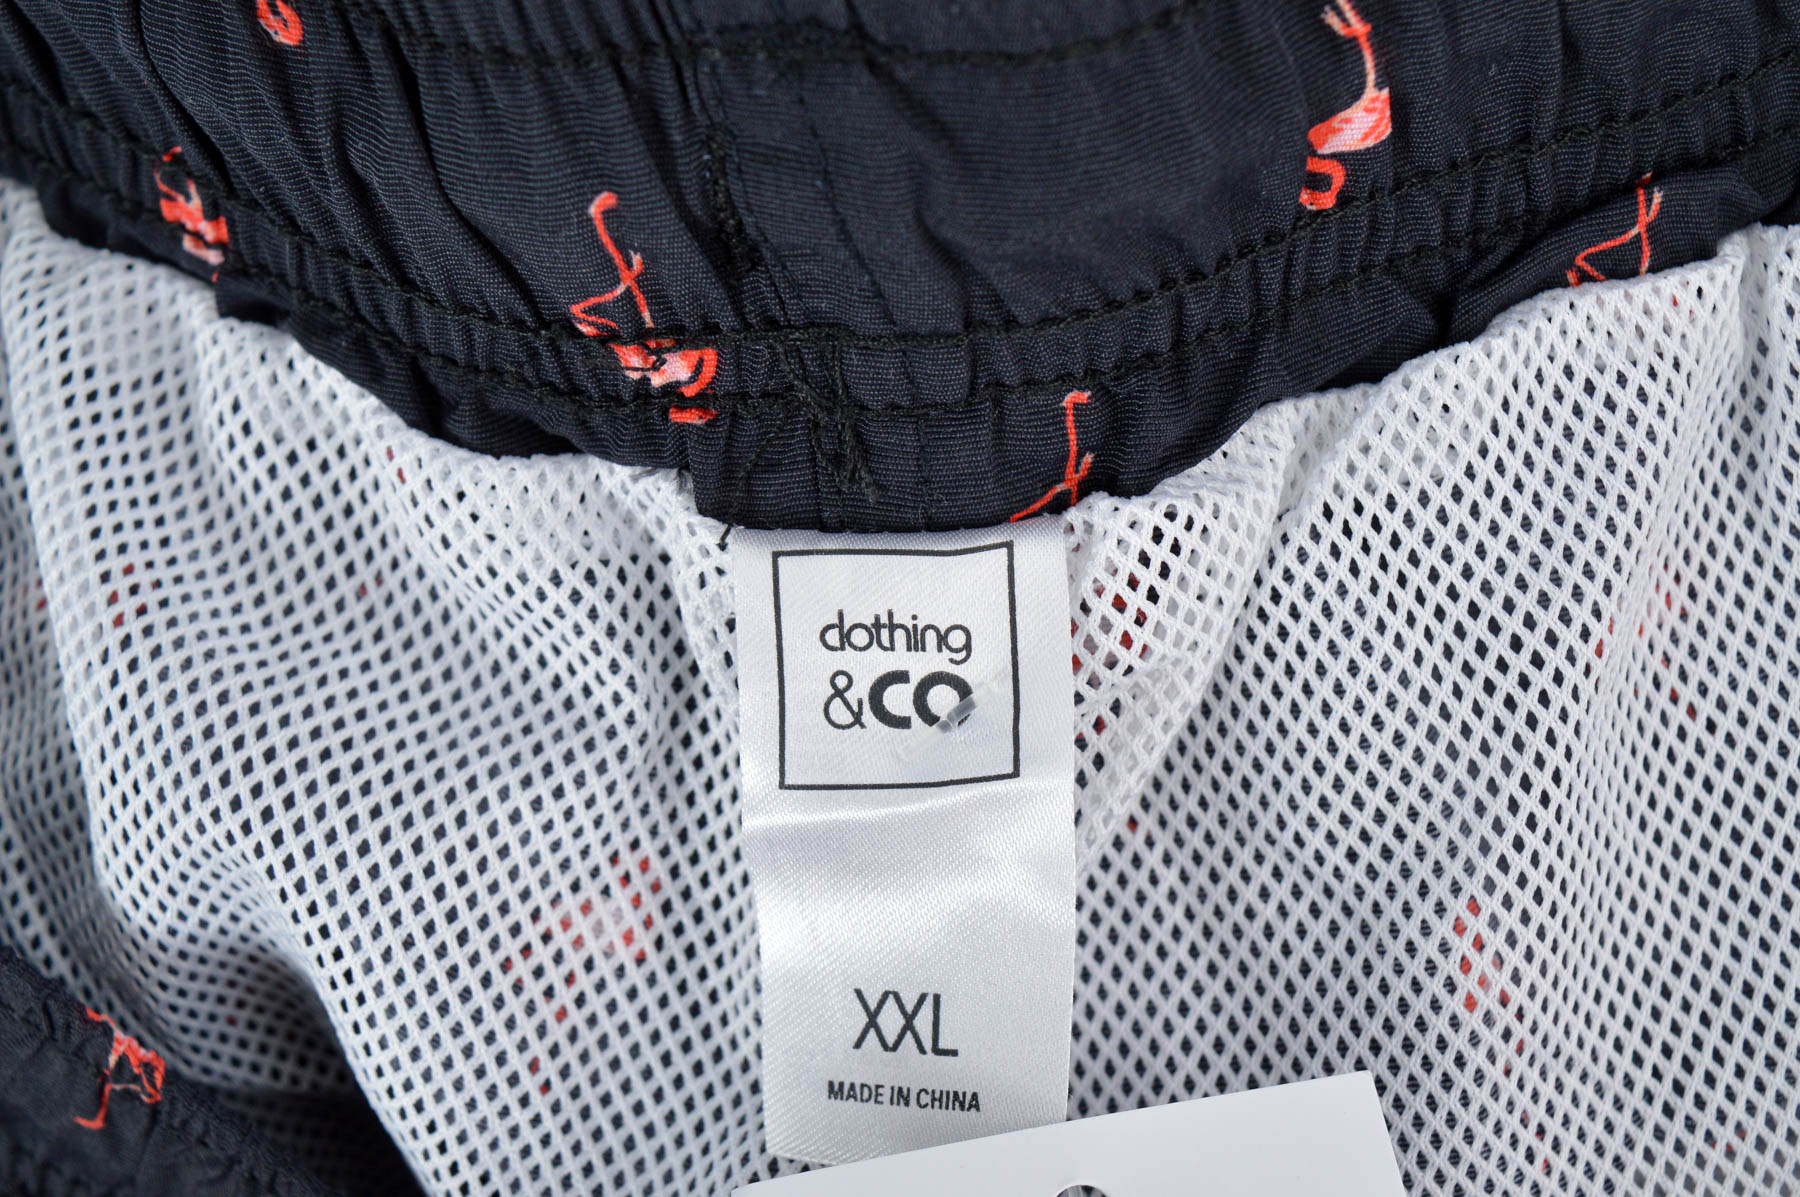 Men's shorts - Clothing & CO - 2